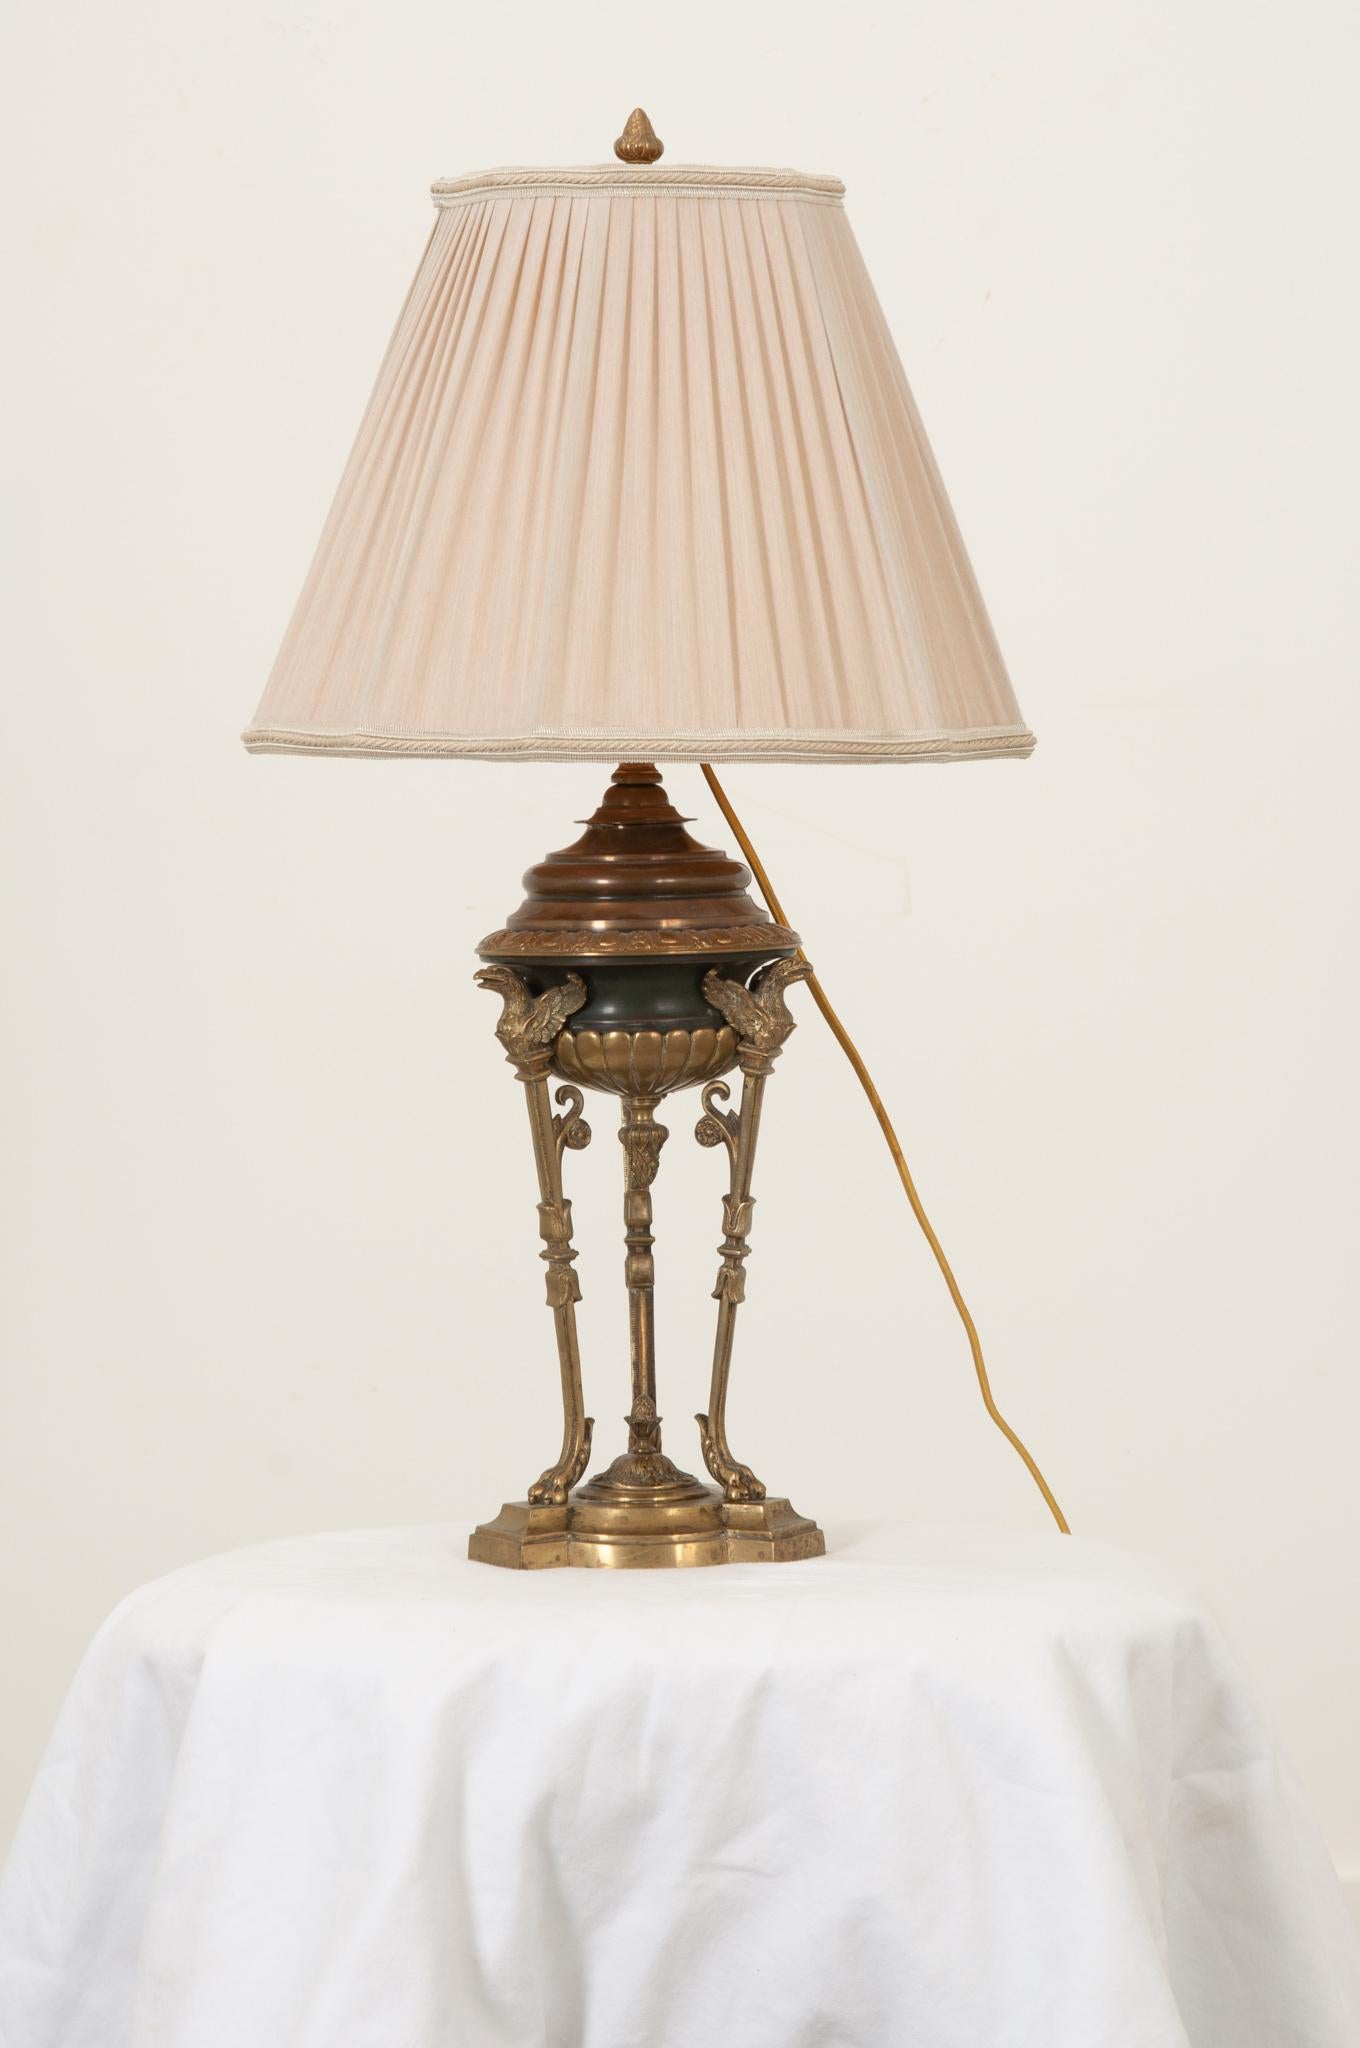 Une lampe de table de style Empire du début du 20e siècle français a une base concave en bronze à trois formes surmontant une pièce de marbre légèrement plus grande de la même forme. La partie supérieure de la coupe est soutenue par trois pieds en